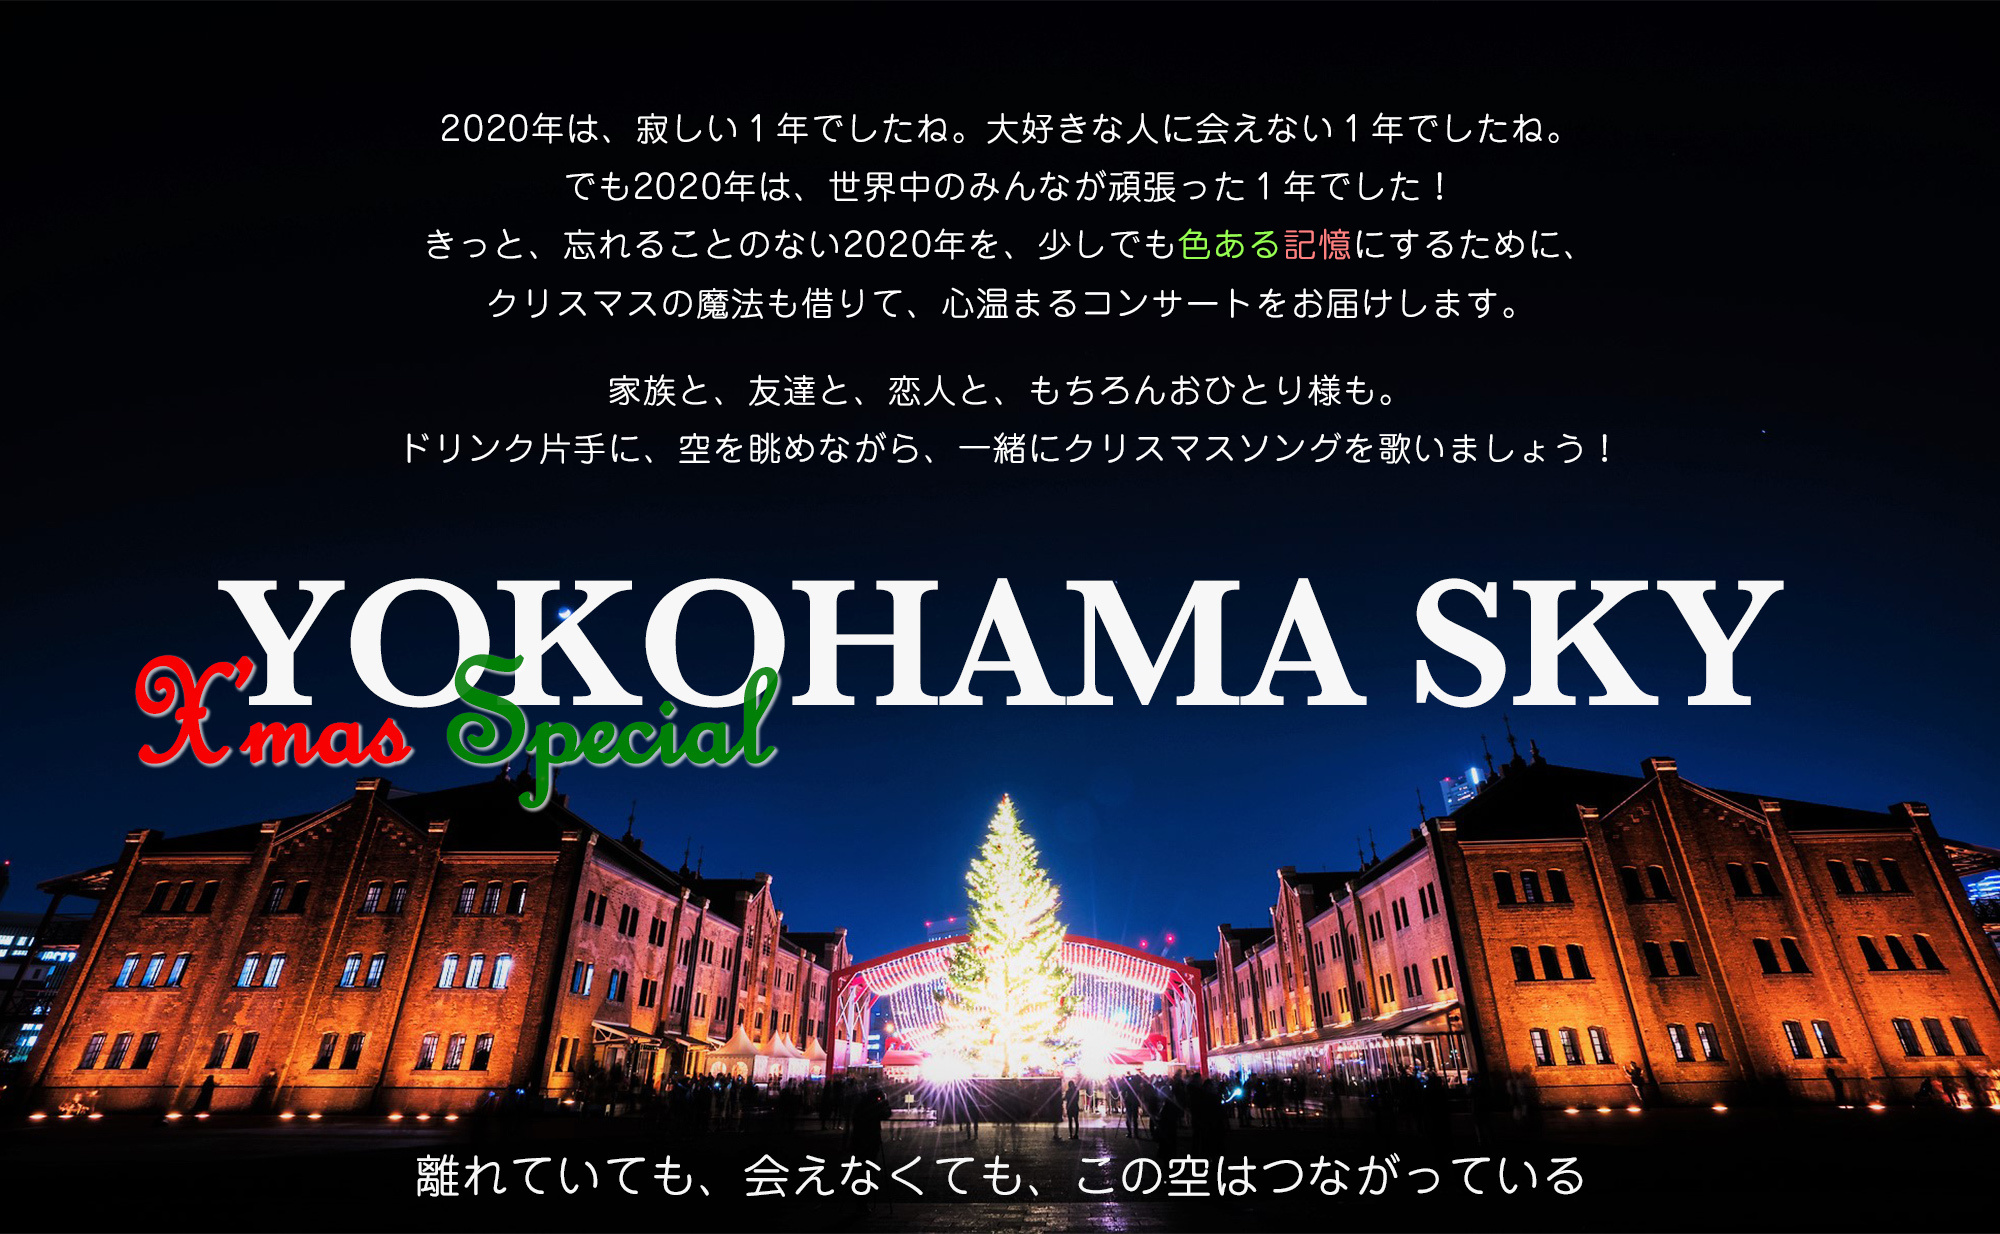 yokohama-sky_main_xmas_2.jpg